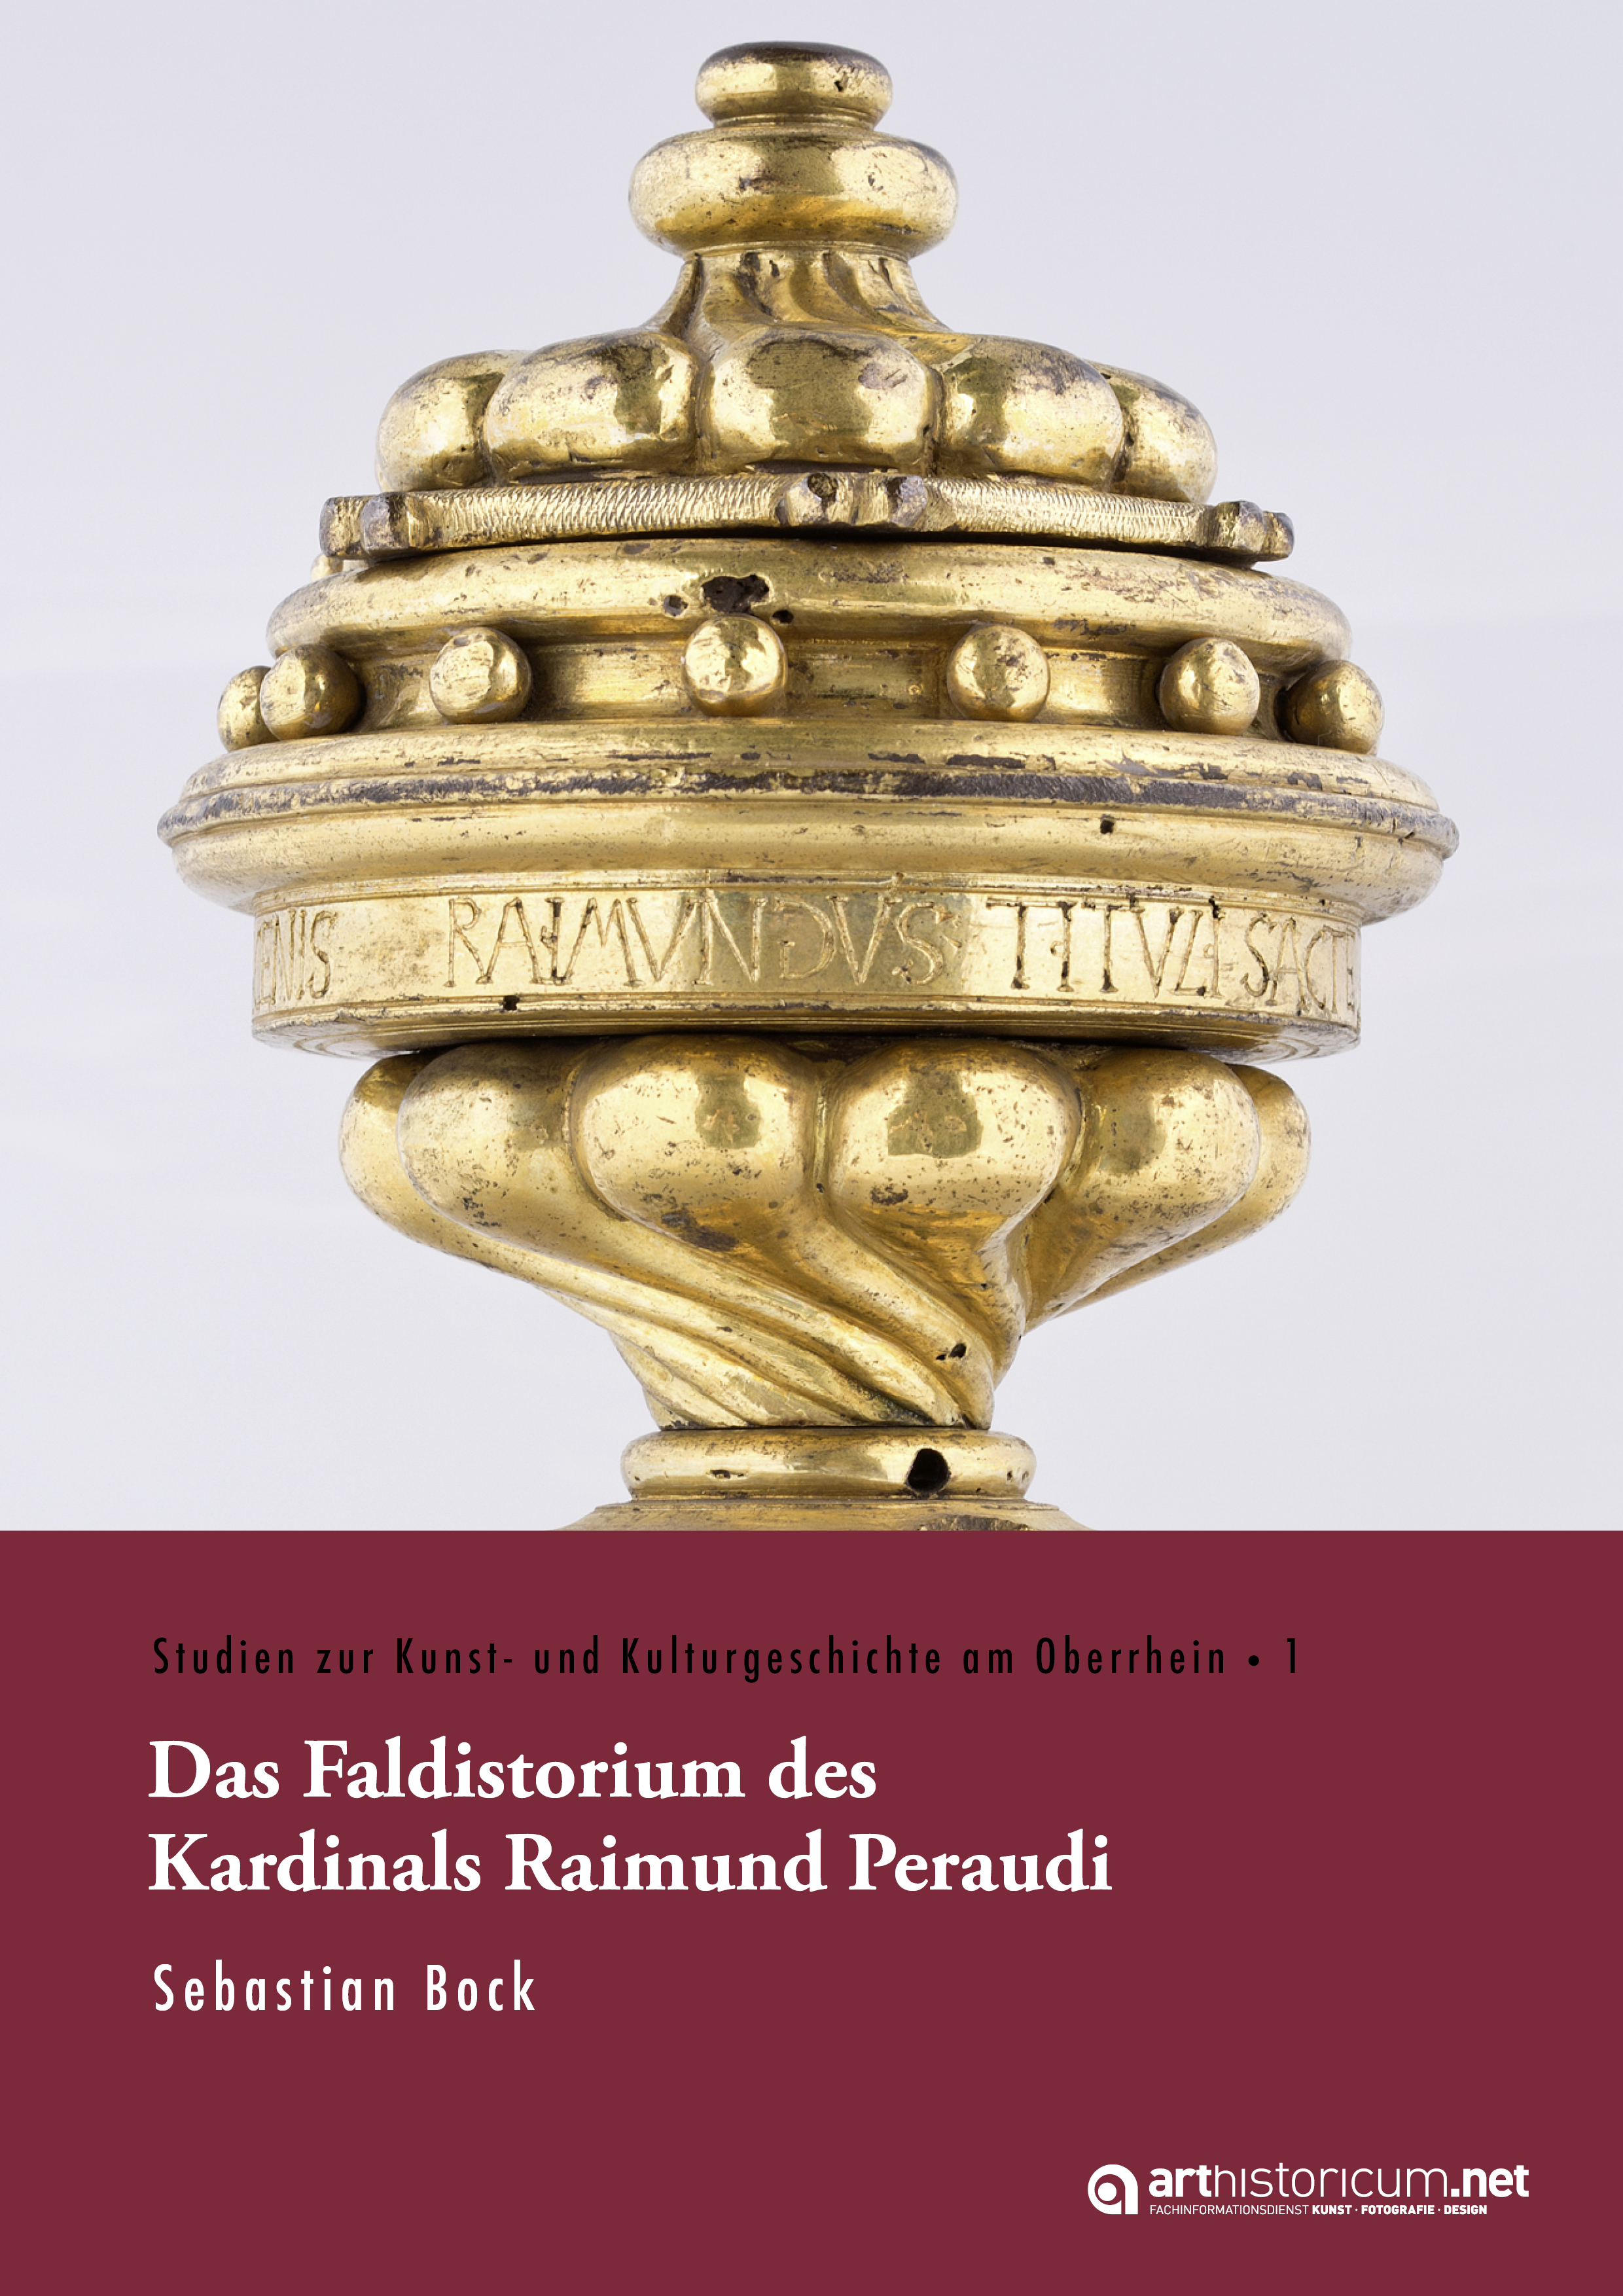 ##plugins.themes.ubOmpTheme01.submissionSeries.cover##: Das Faldistorium des Kardinals Raimund Peraudi